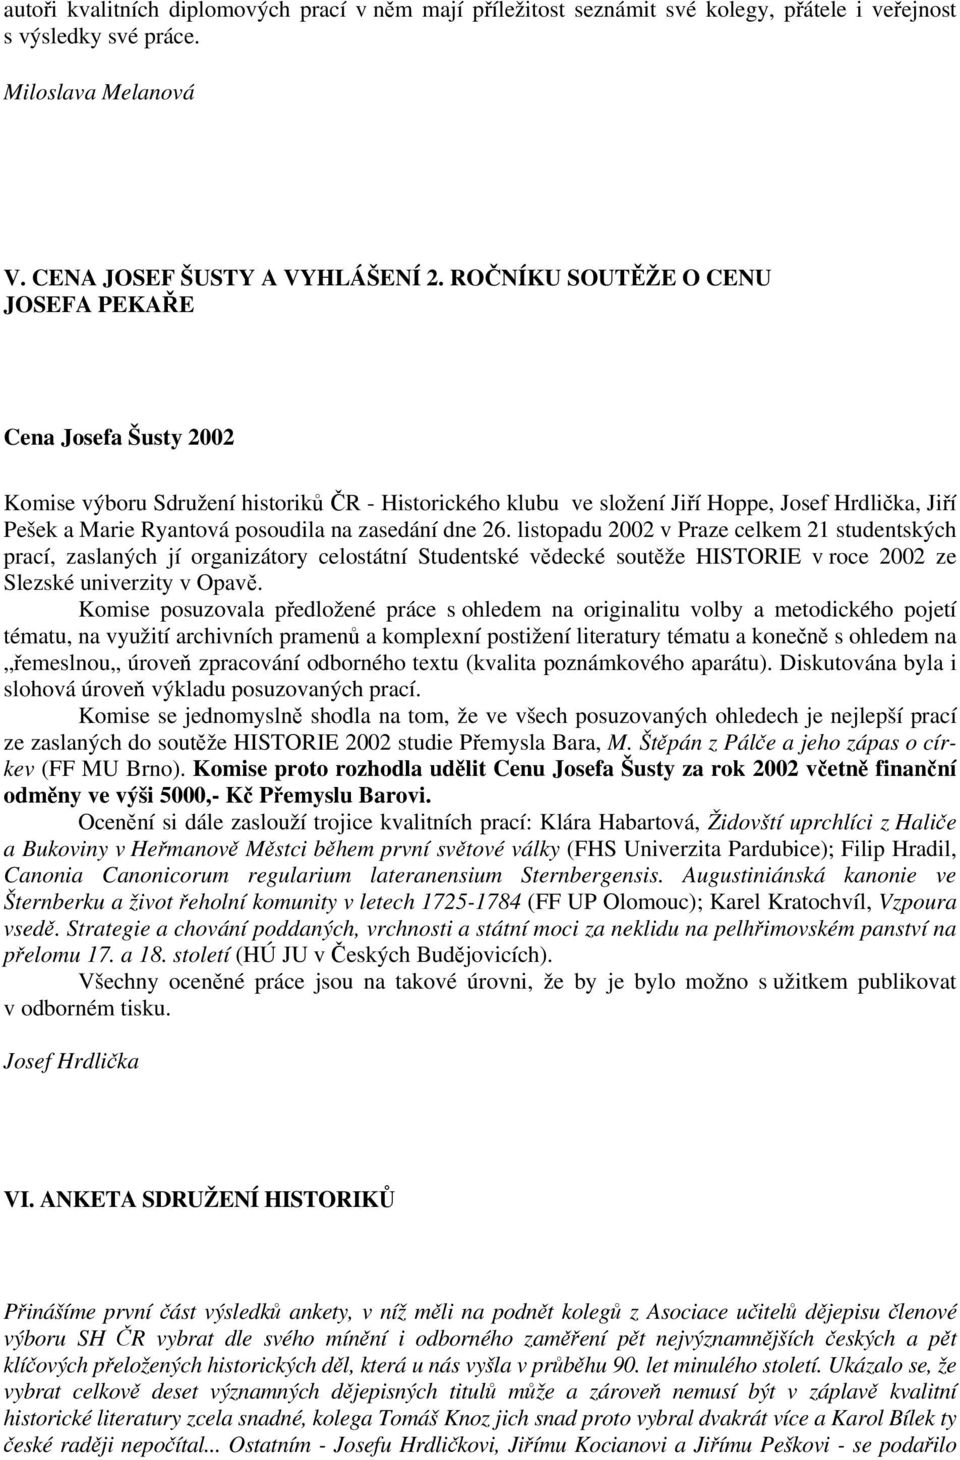 zasedání dne 26. listopadu 2002 v Praze celkem 21 studentských prací, zaslaných jí organizátory celostátní Studentské vědecké soutěže HISTORIE v roce 2002 ze Slezské univerzity v Opavě.